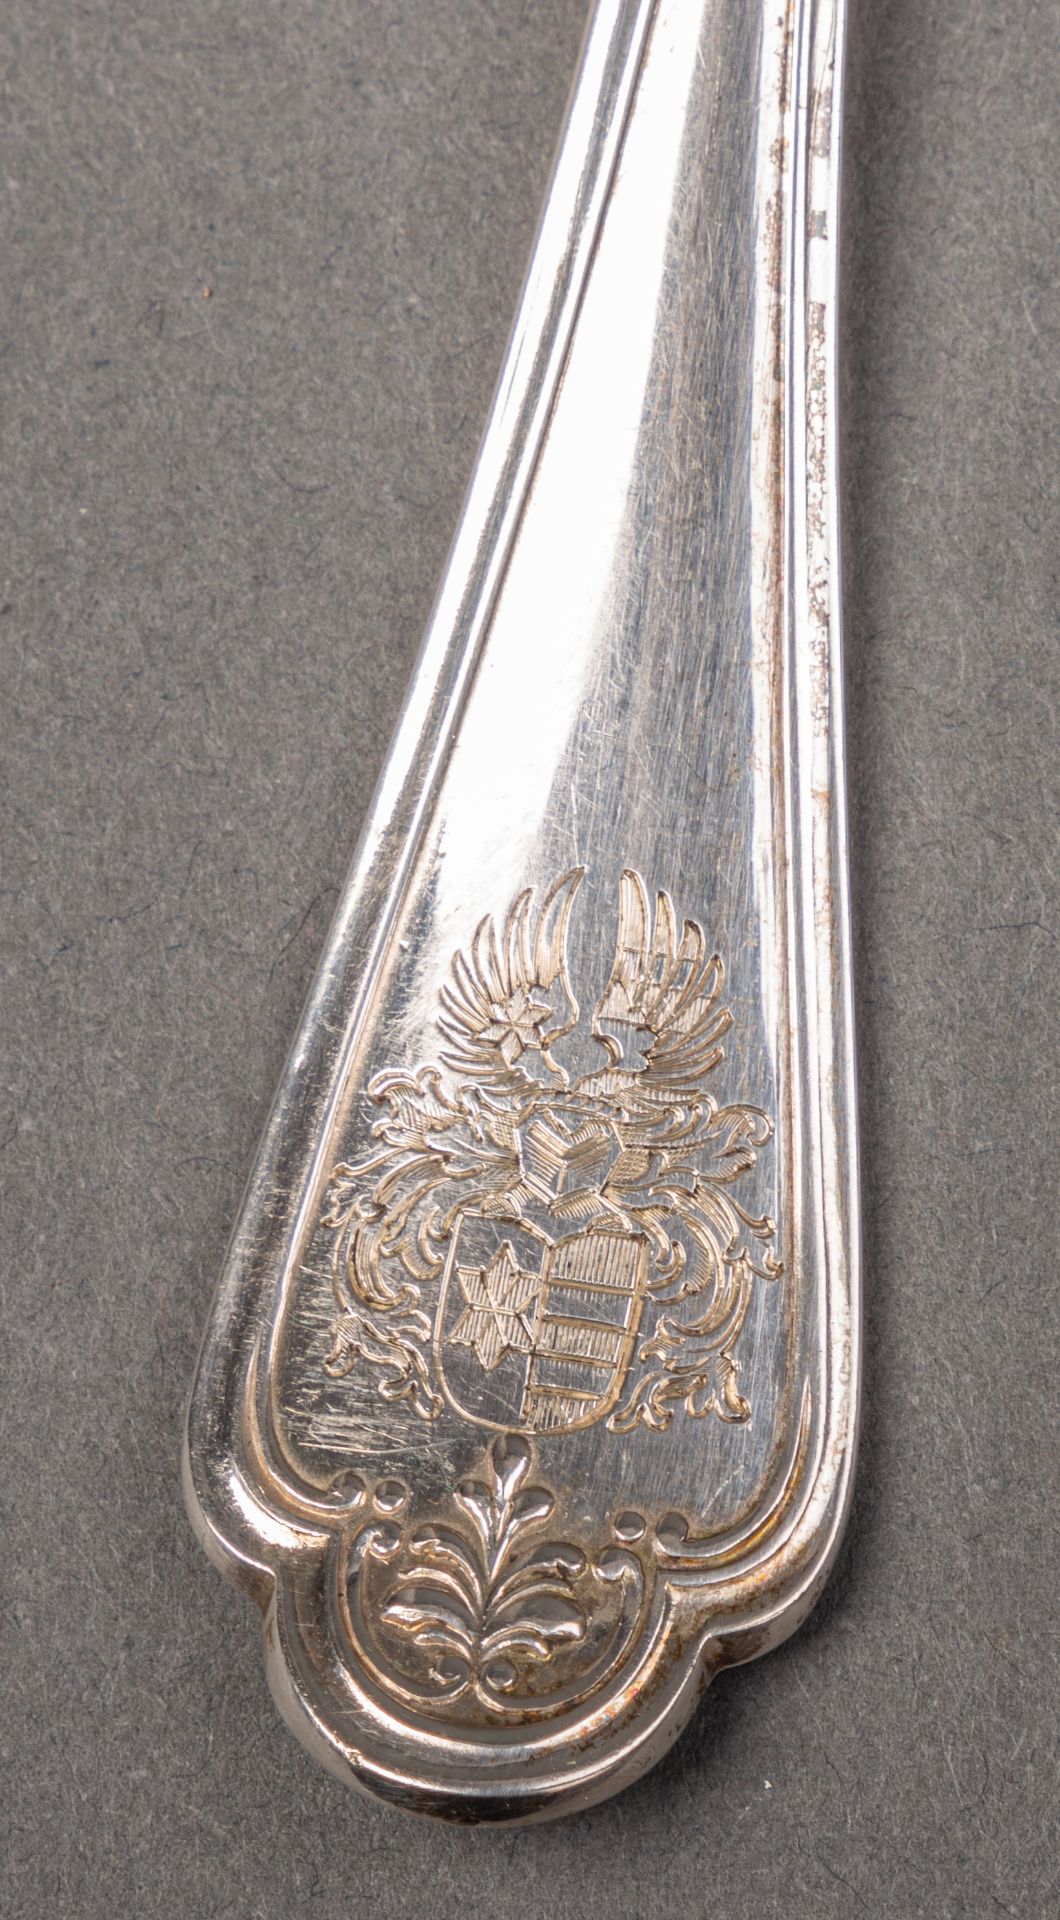 Herrschaftliches Silberbesteck mit Wappen der Saarbrücker Industriellenfamilie Schwindt - Image 4 of 6